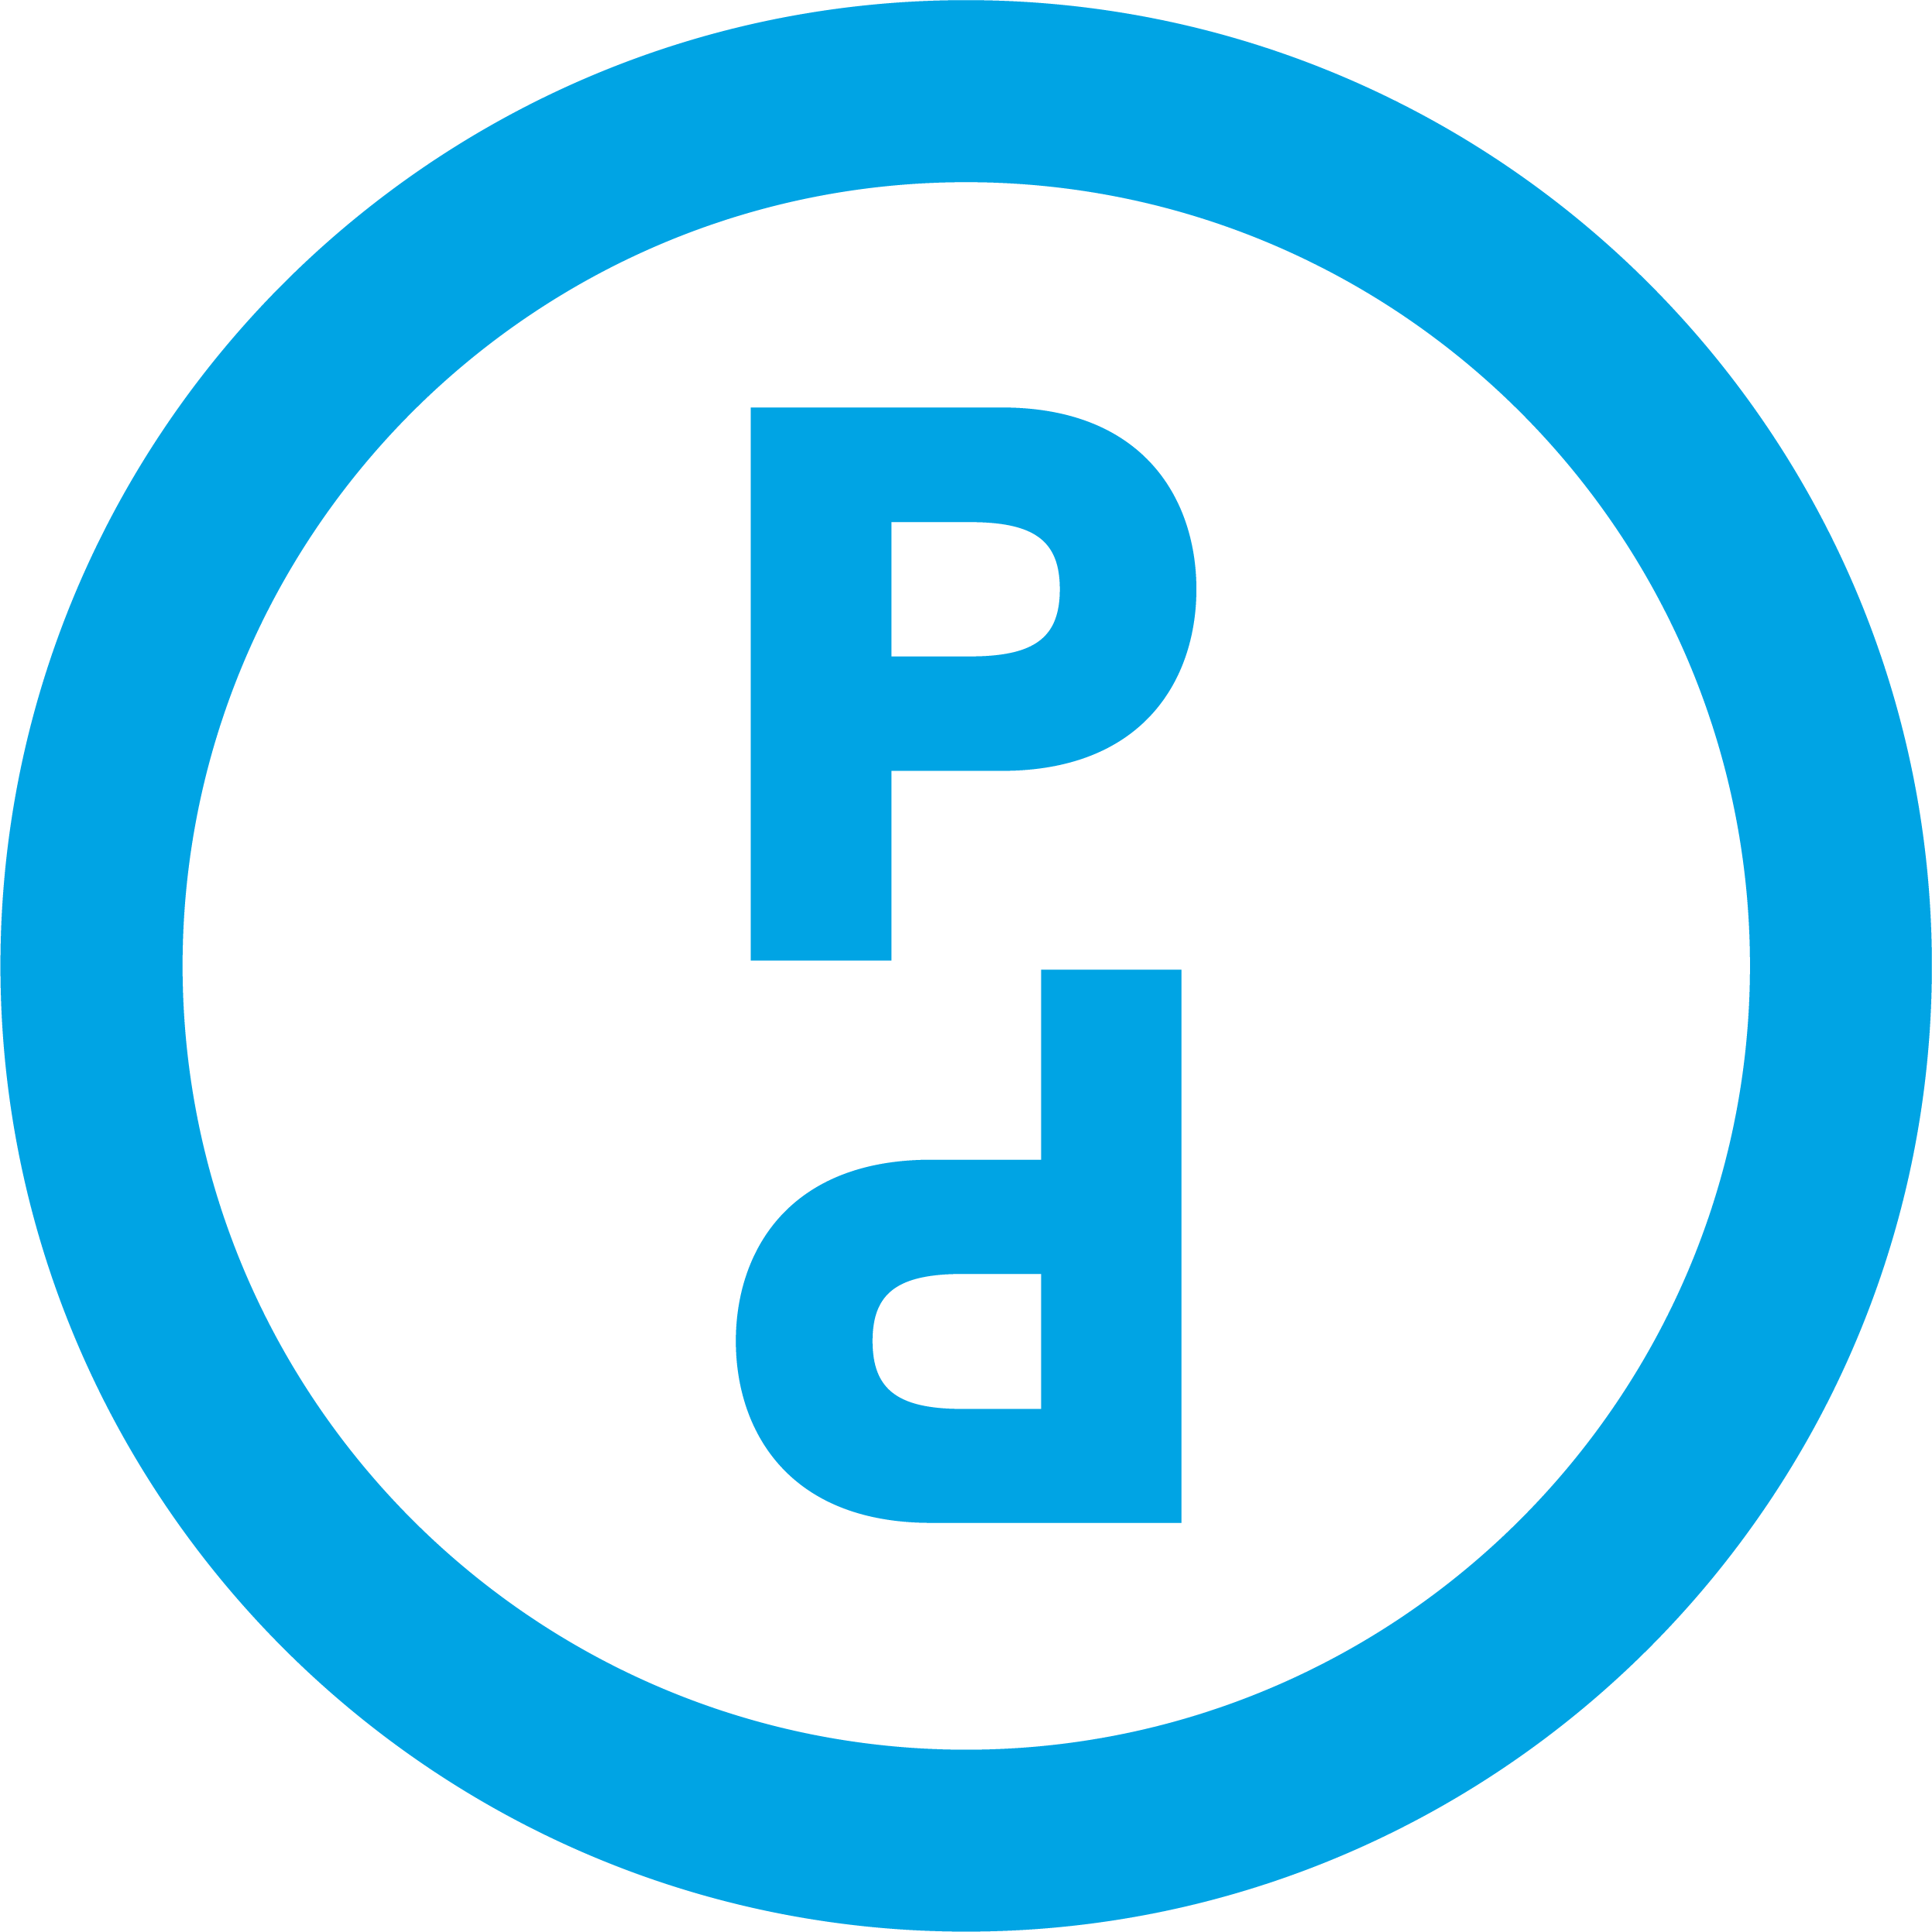 PD Logo